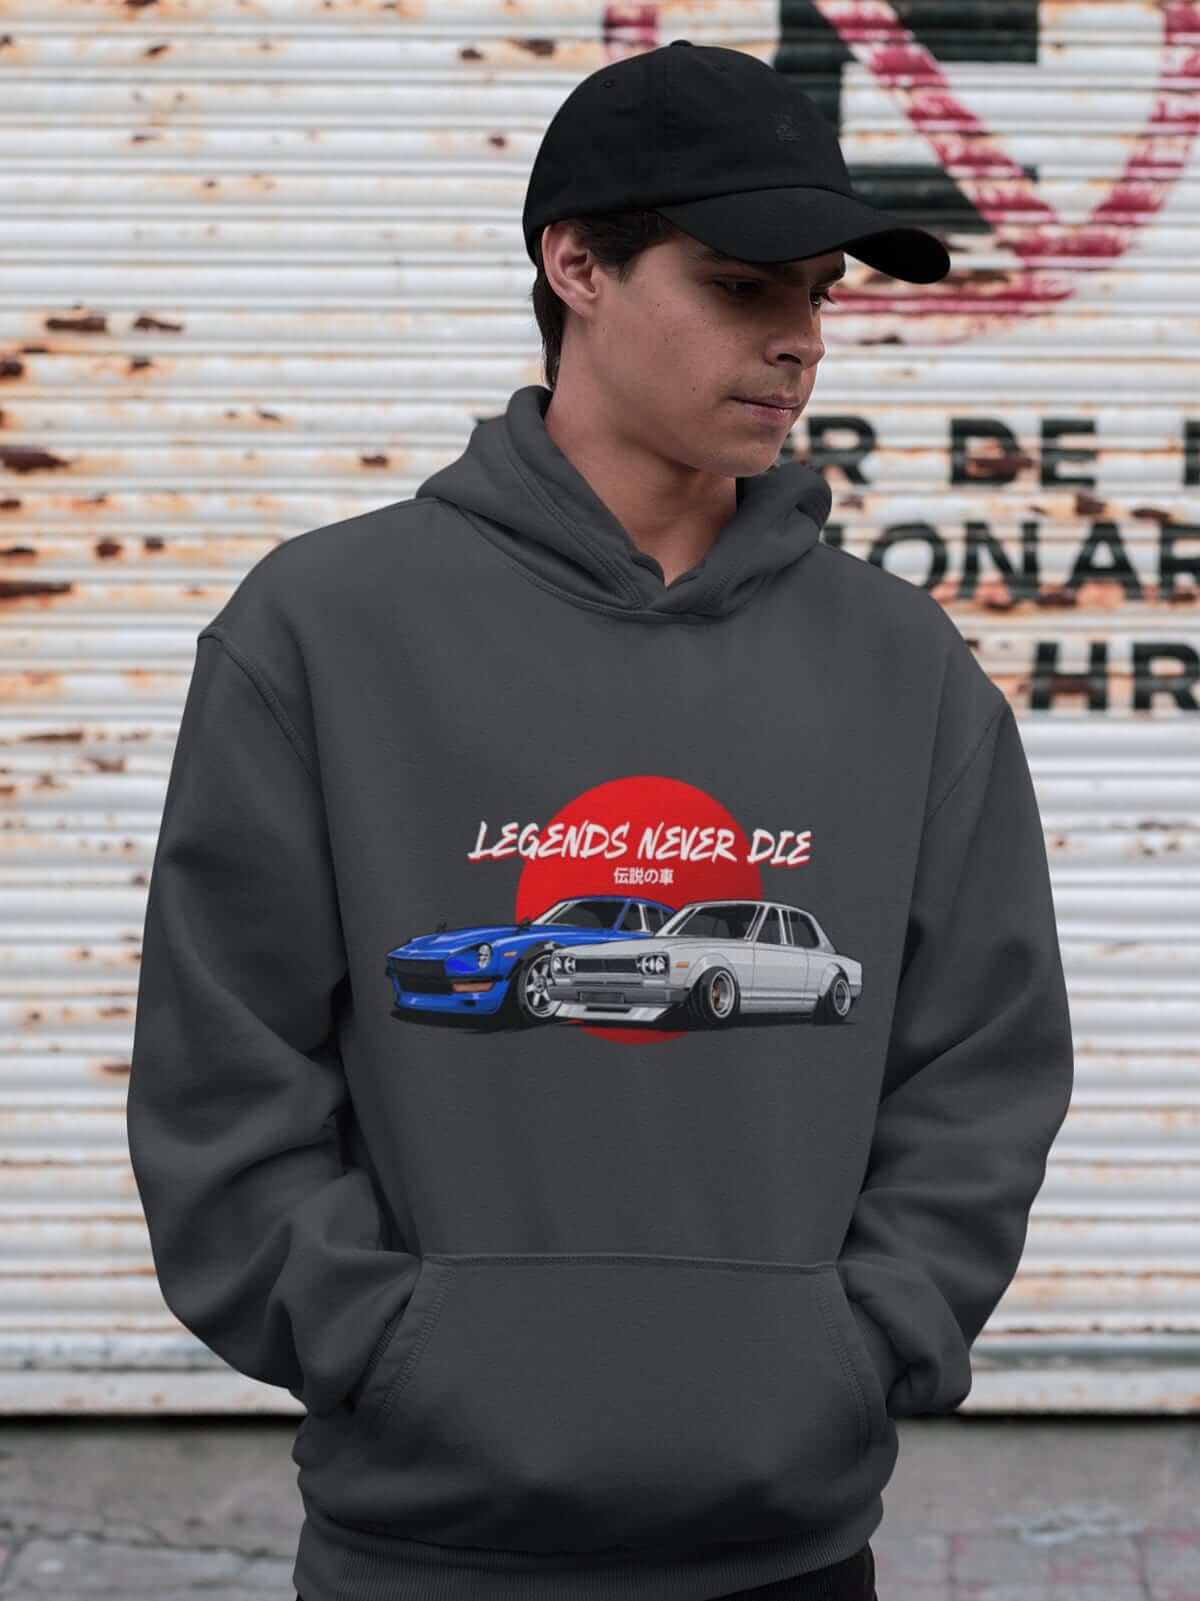 Legendary Japanese cars printed on dark grey car hoodie, JDM sweatshirt, car guy gift, car lover, car fan, car enthusiast, petrolhead, JDM lover, boyfriend gift idea